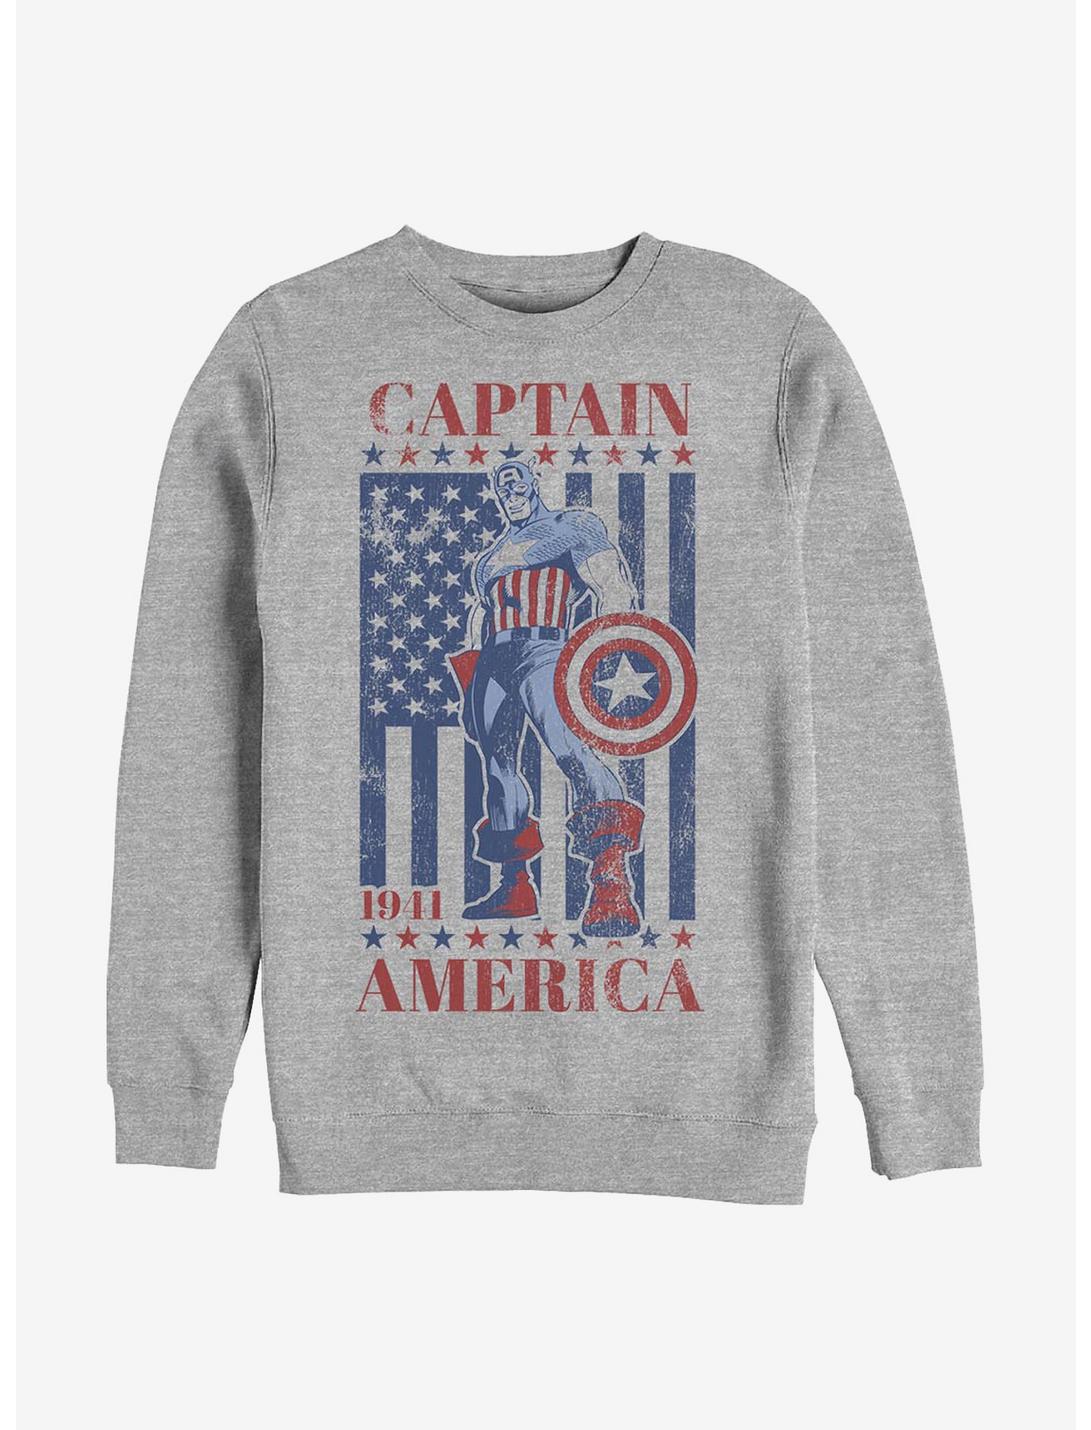 Marvel Captain America Captain 'Merica Crew Sweatshirt, ATH HTR, hi-res